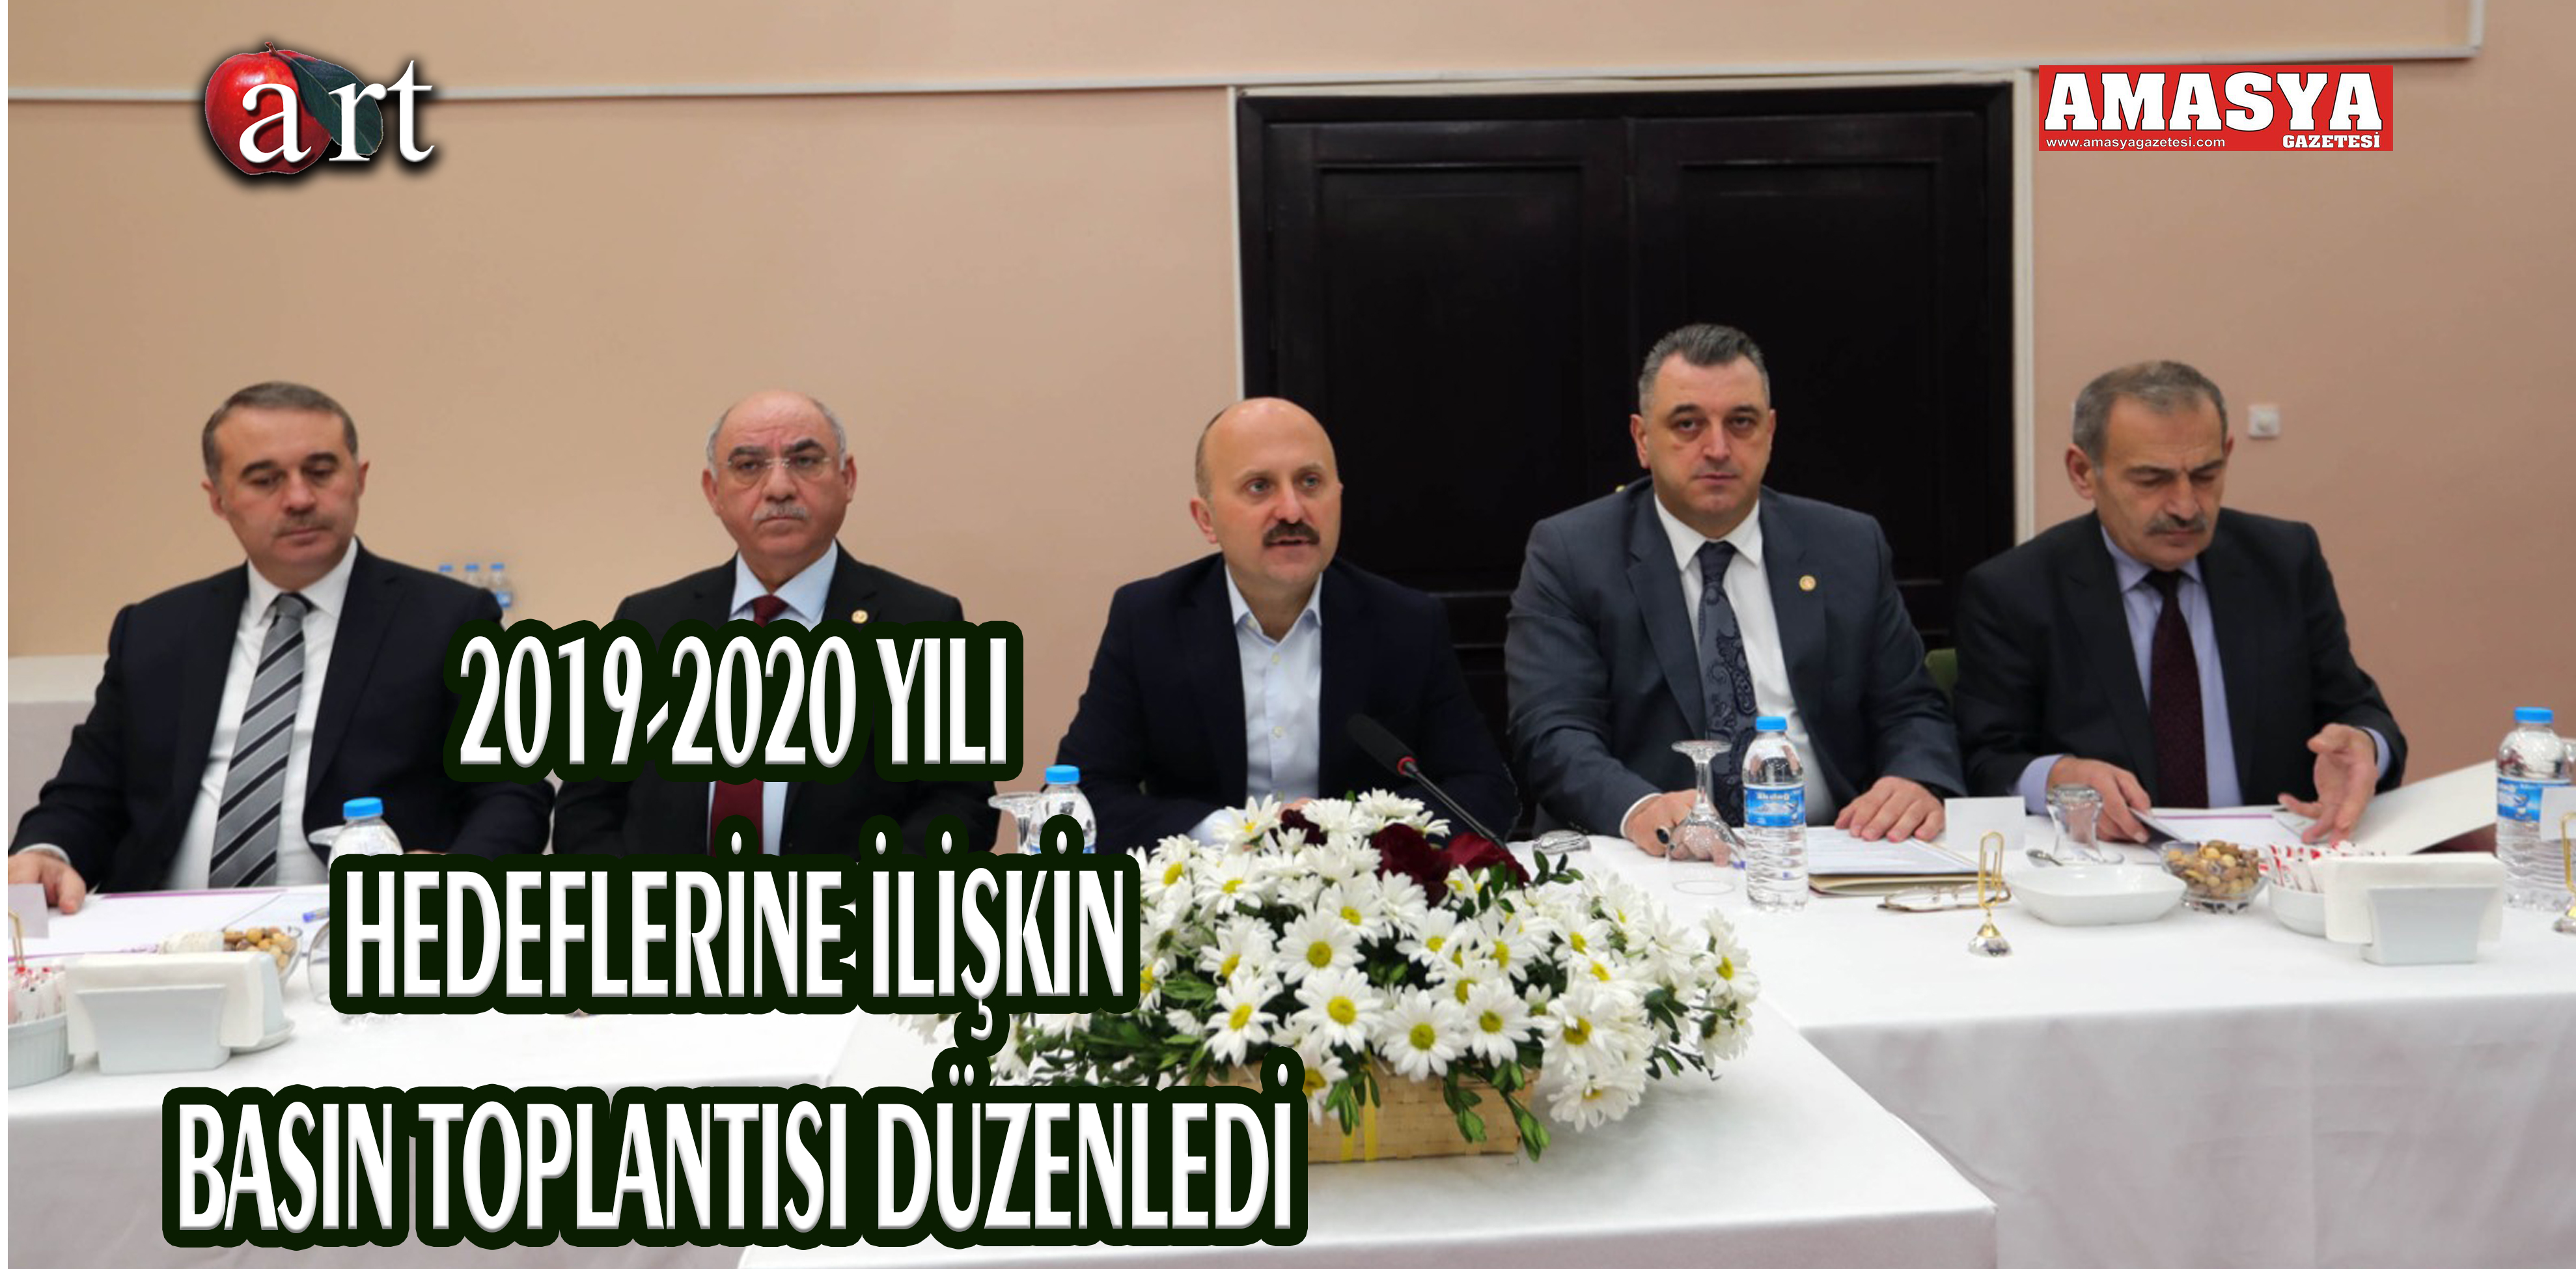 2019-2020 YILI HEDEFLERİNE İLİŞKİN BASIN TOPLANTISI DÜZENLEDİ.